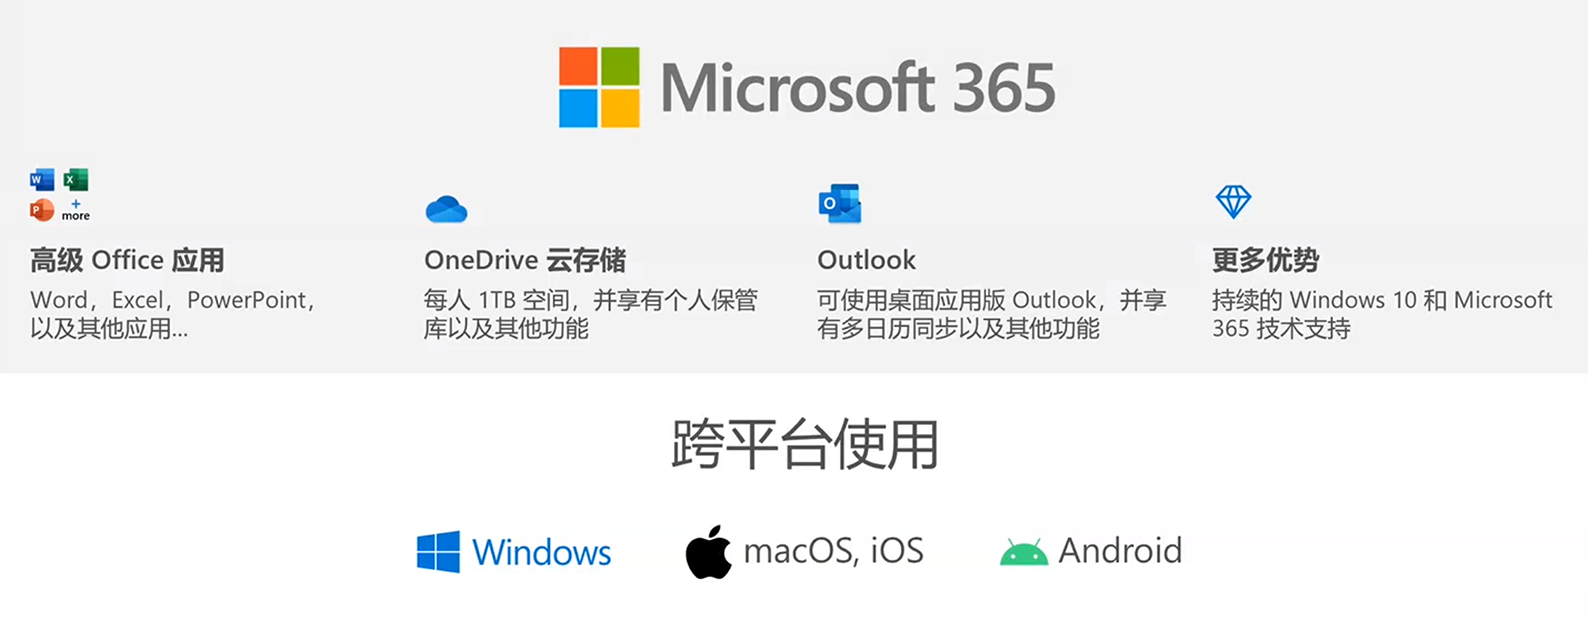 正版特惠 Office 365 官方订阅一年拼团 89元/年-QQ前线乐园